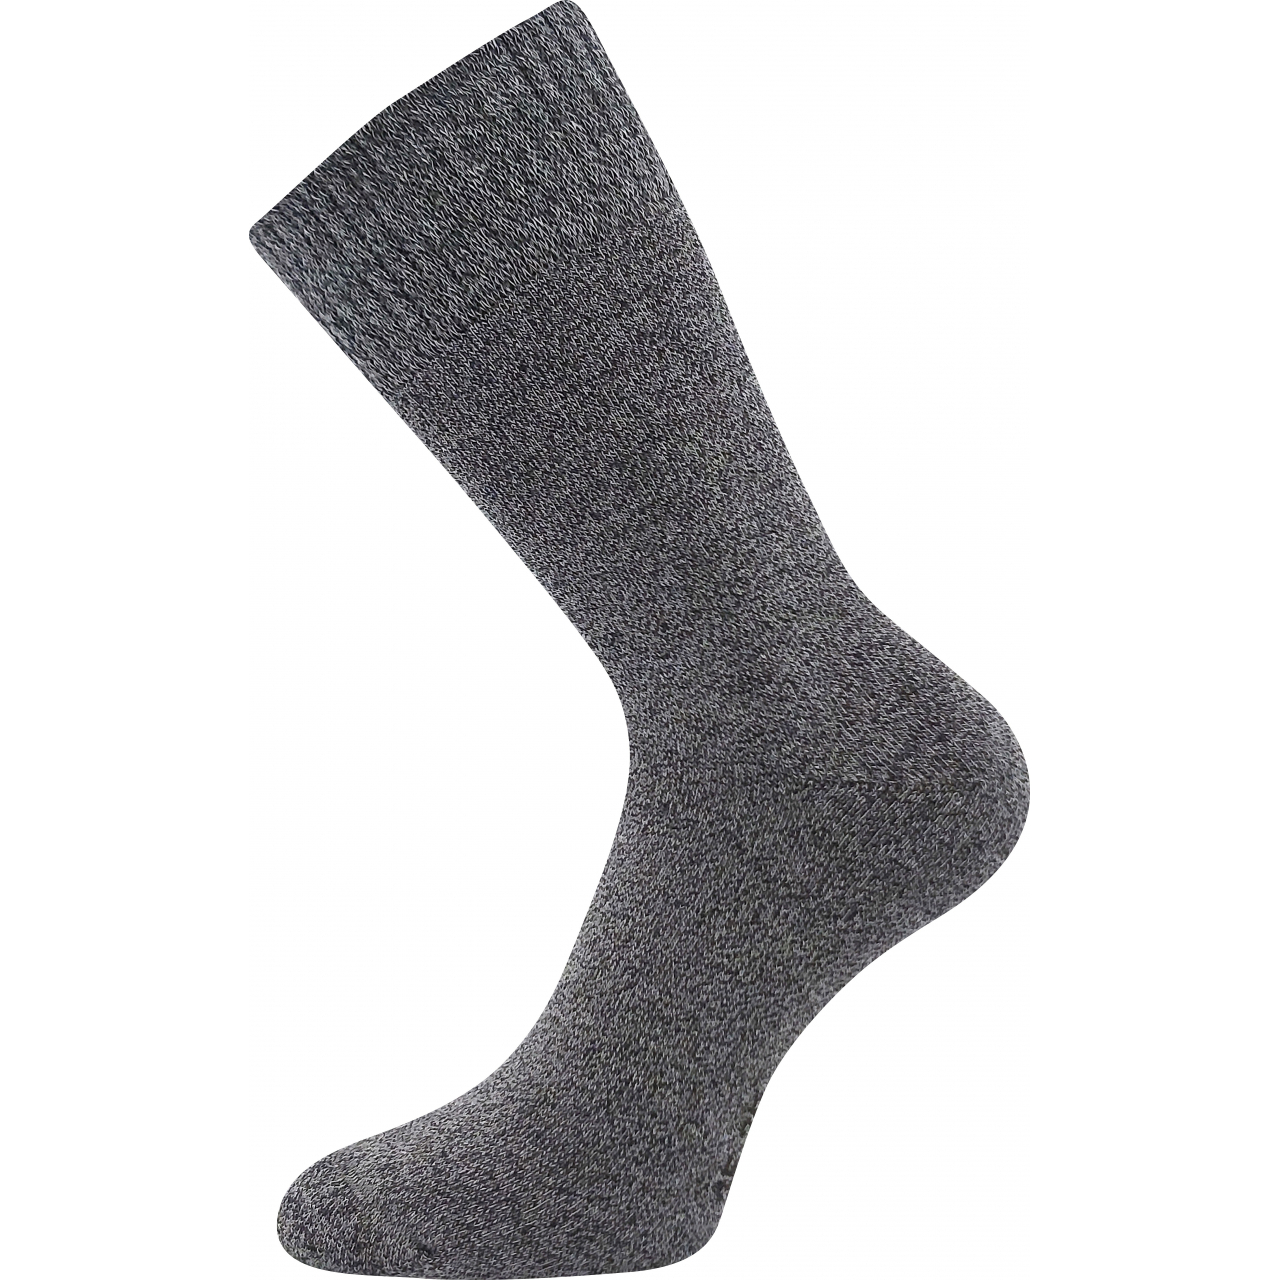 Ponožky klasické unisex Voxx Wolis - tmavě šedé, 35-38